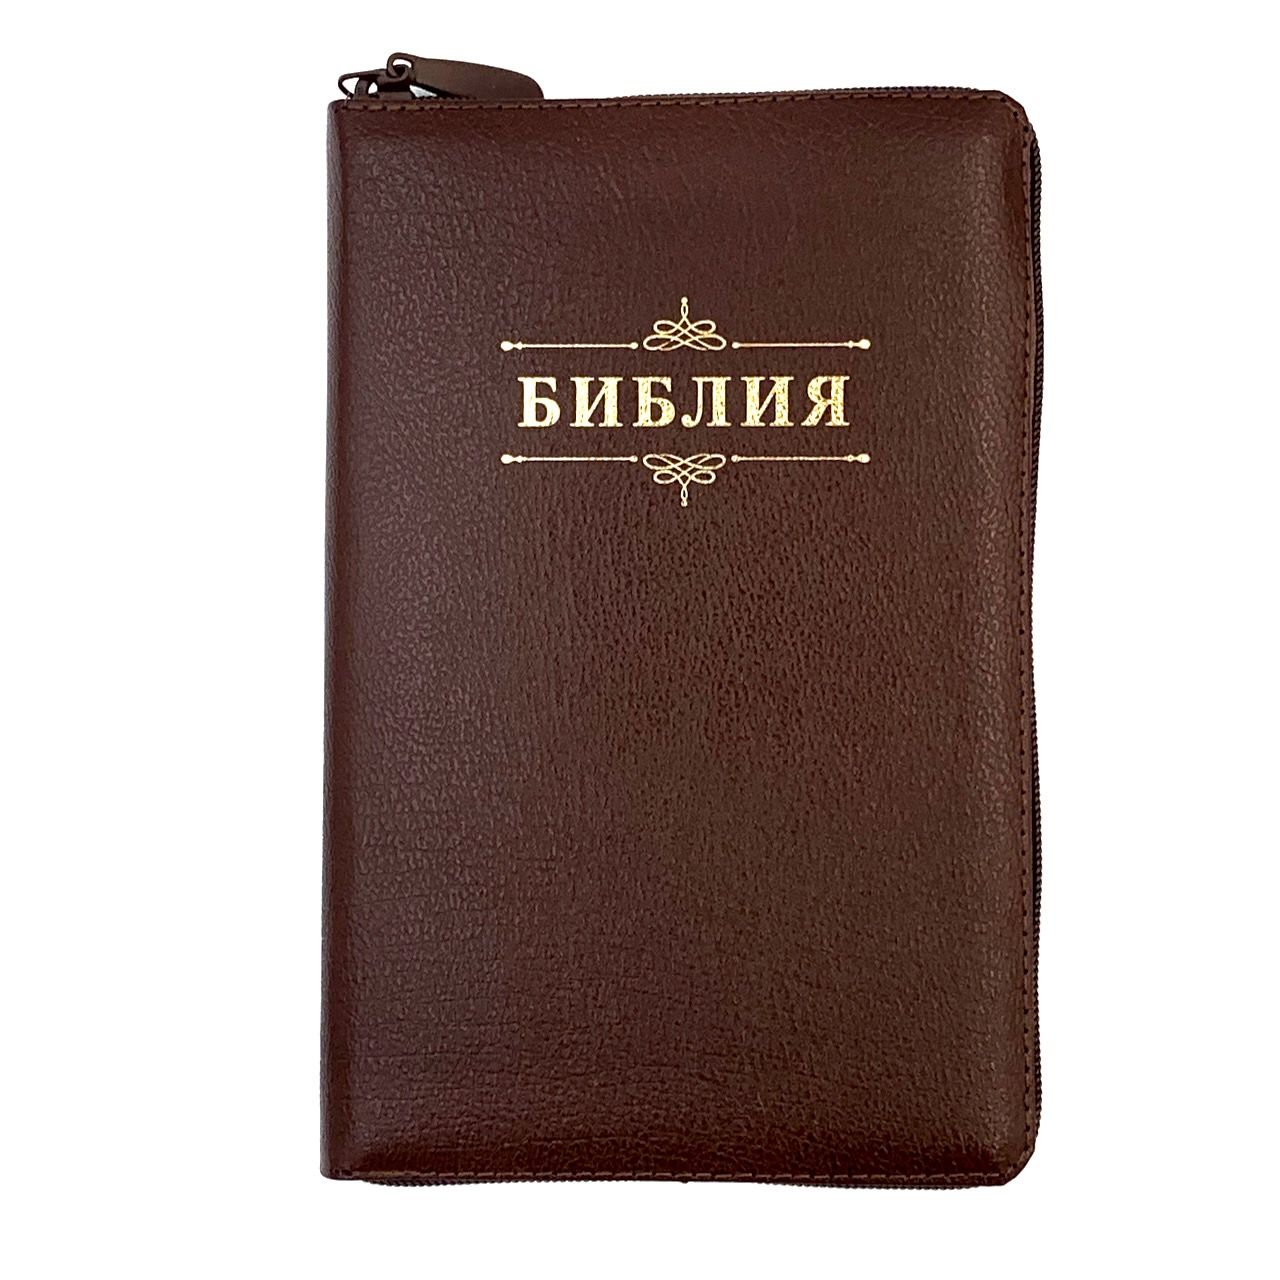 Библия 055z код 23055-19 надпись "Библия с вензелем", кожаный переплет на молнии, цвет коричневый металлик, средний формат, 143*220 мм